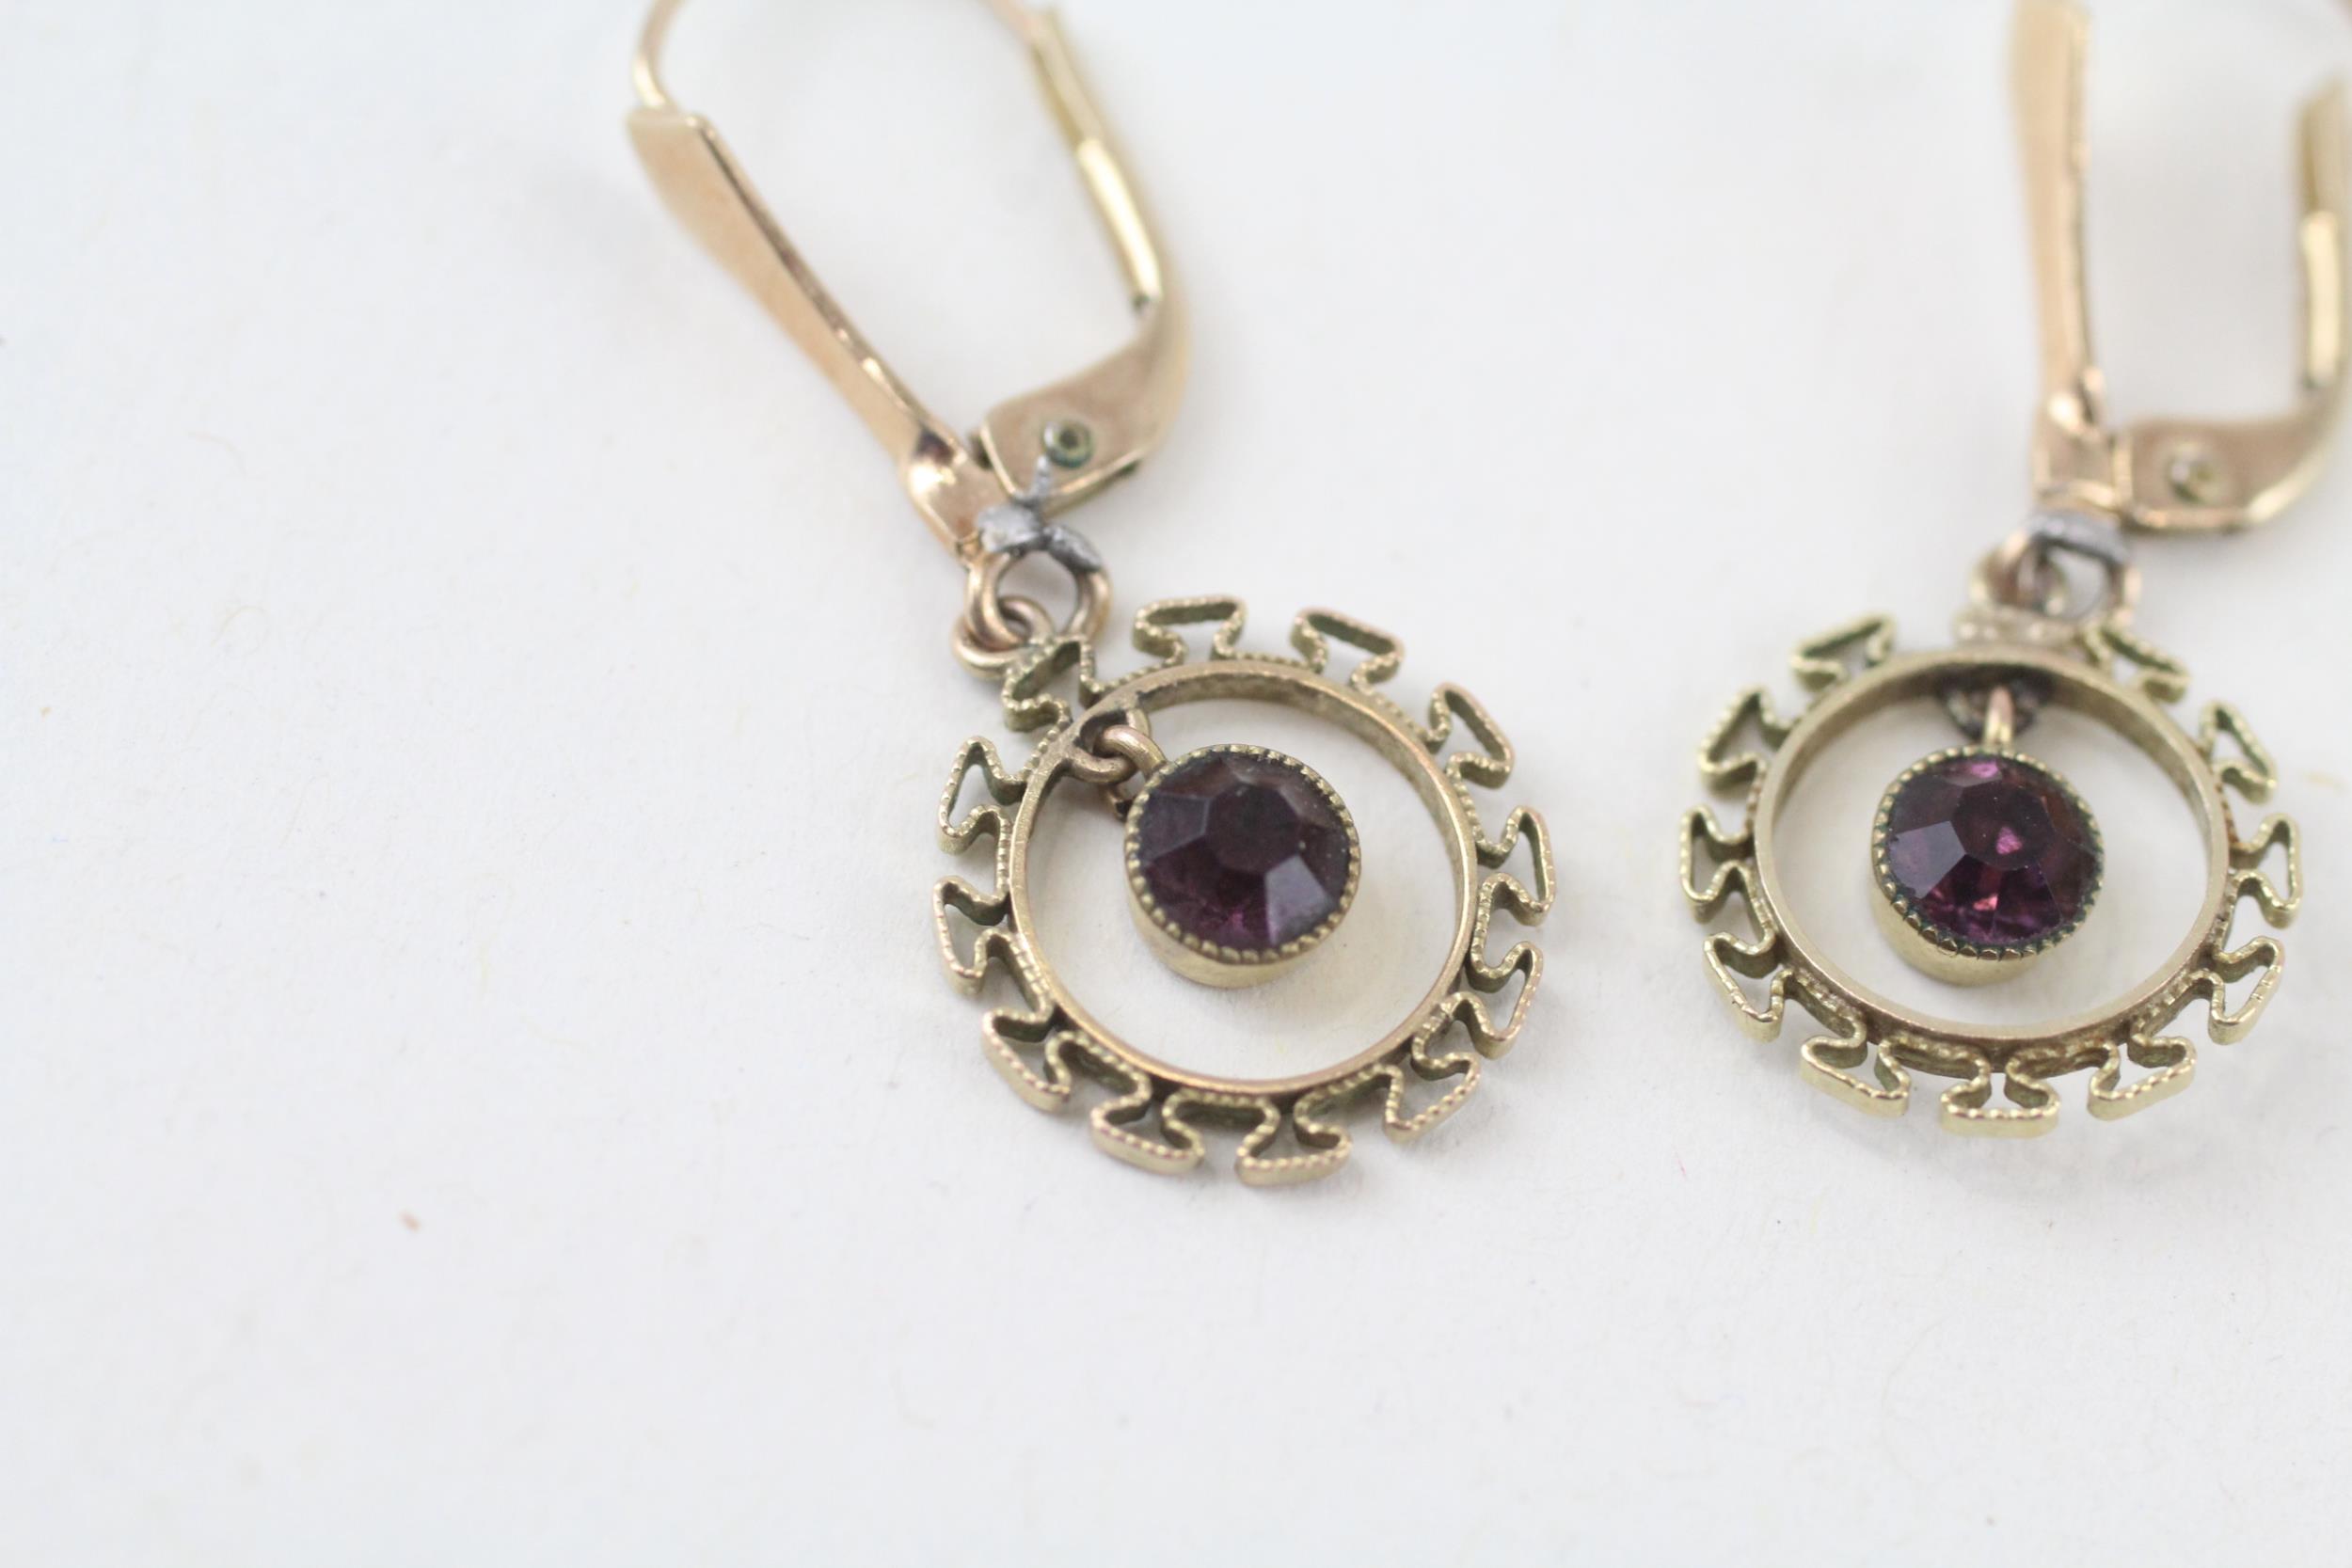 9ct gold purple paste vintage drop earrings (1.6g) - Image 2 of 4